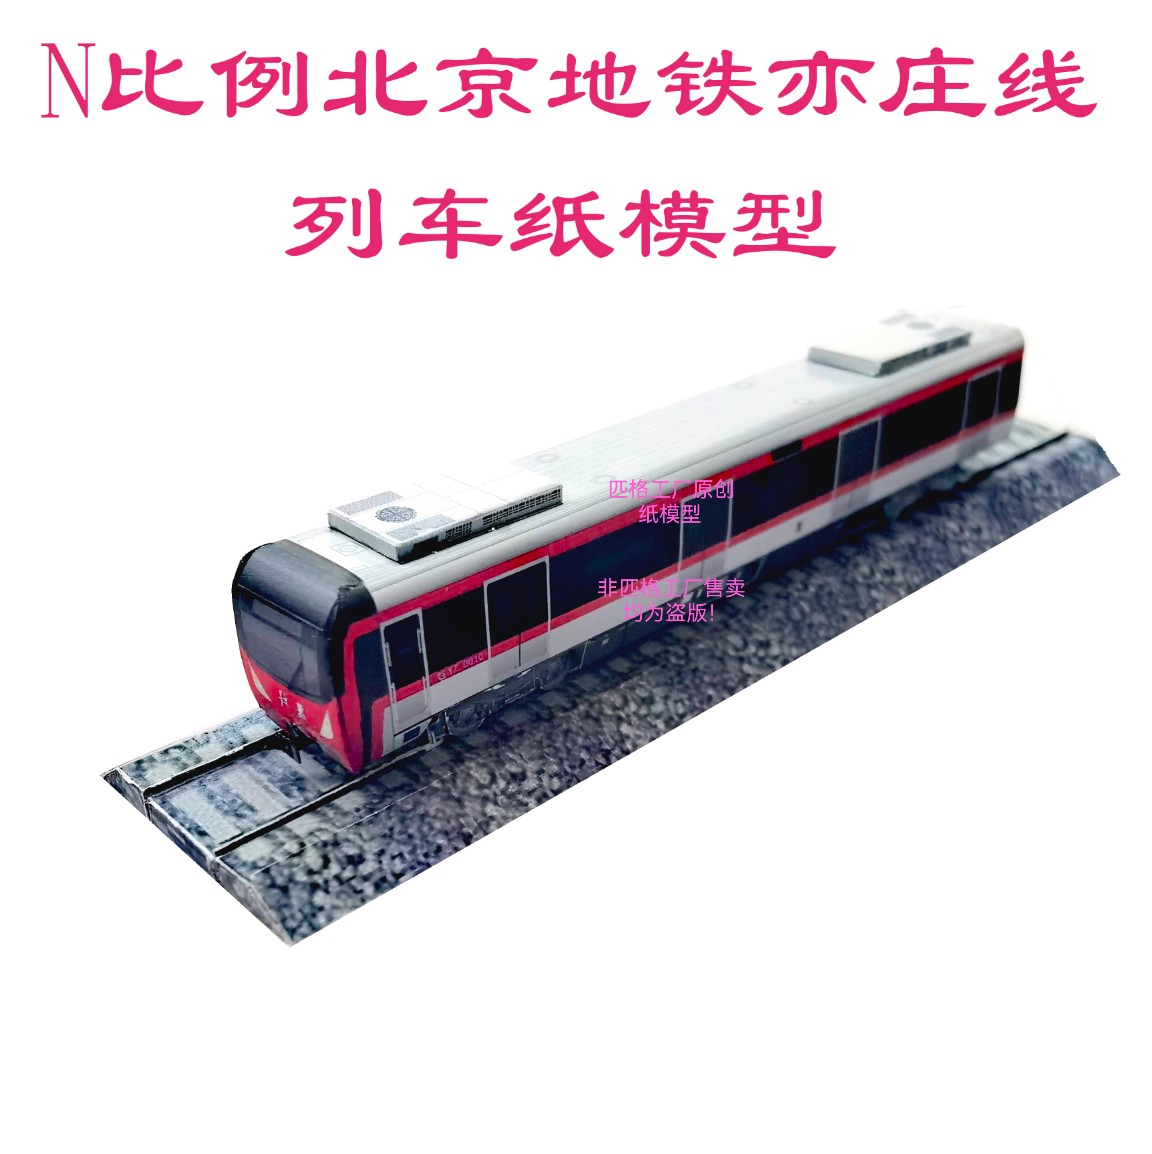 匹格工厂N比例北京地铁亦庄线列车模型3D纸模DIY火车高铁地铁模型